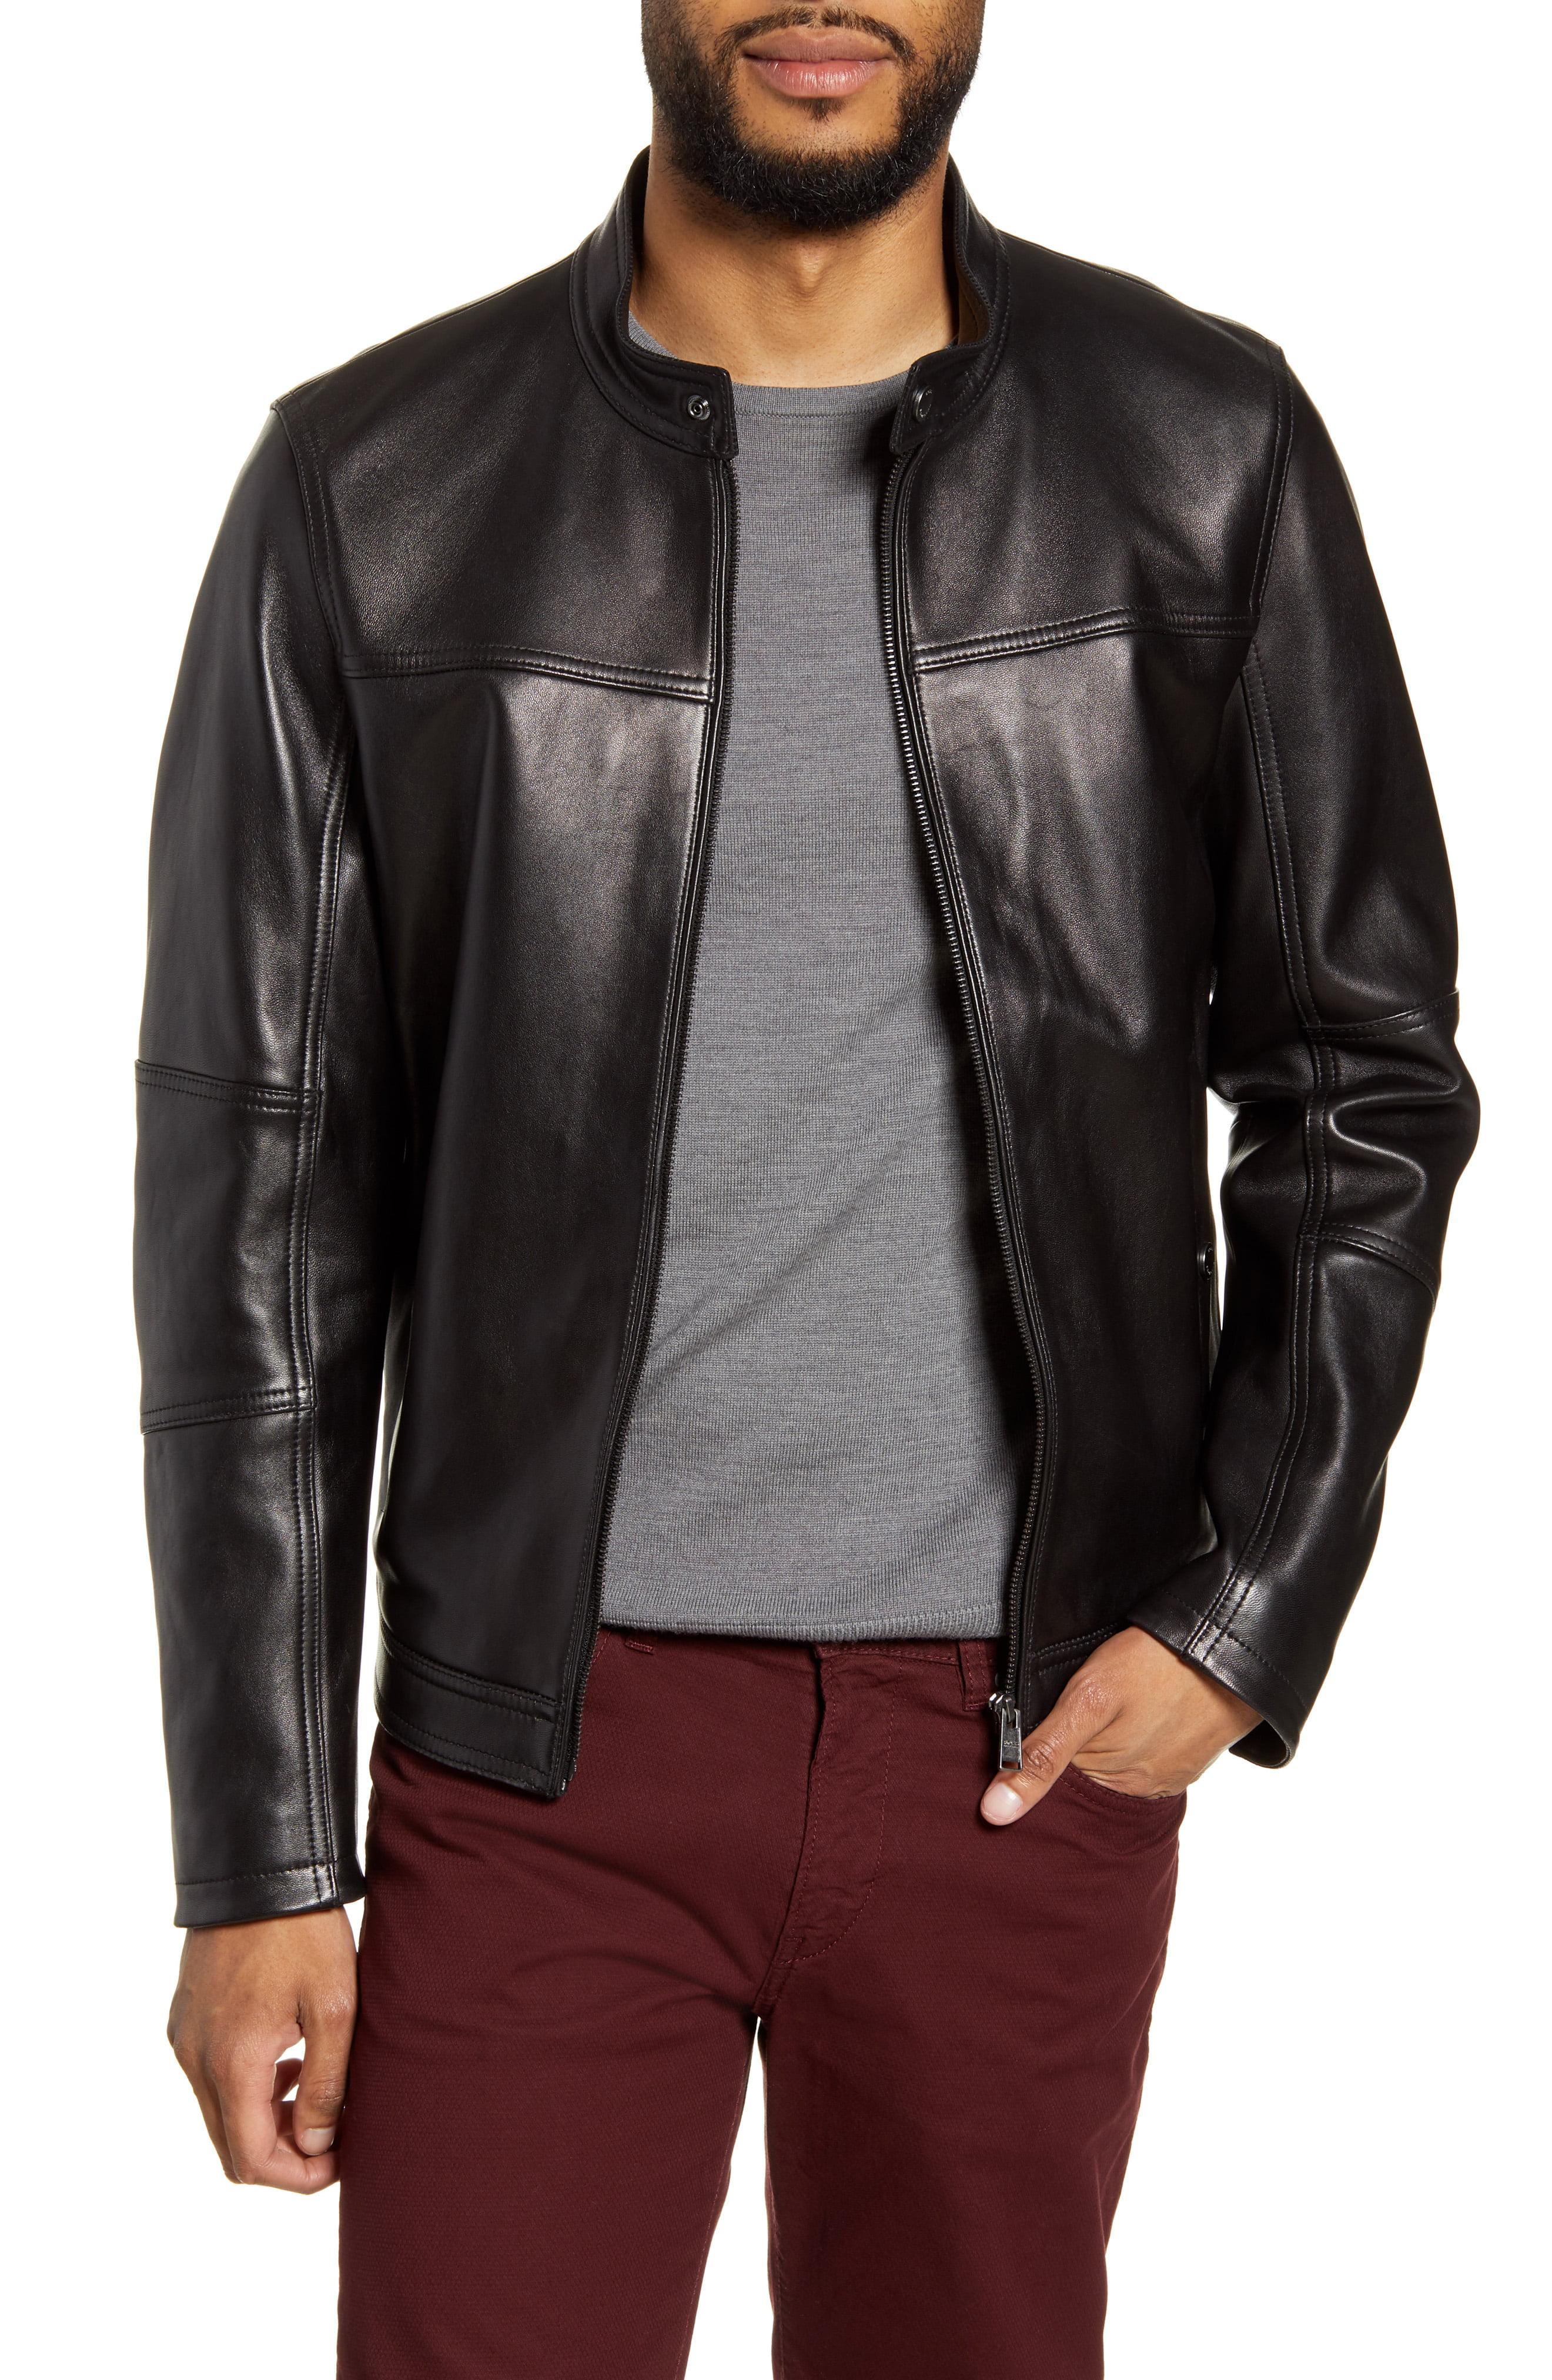 BOSS by HUGO BOSS Nestem Leather Moto Jacket in Black for Men - Lyst